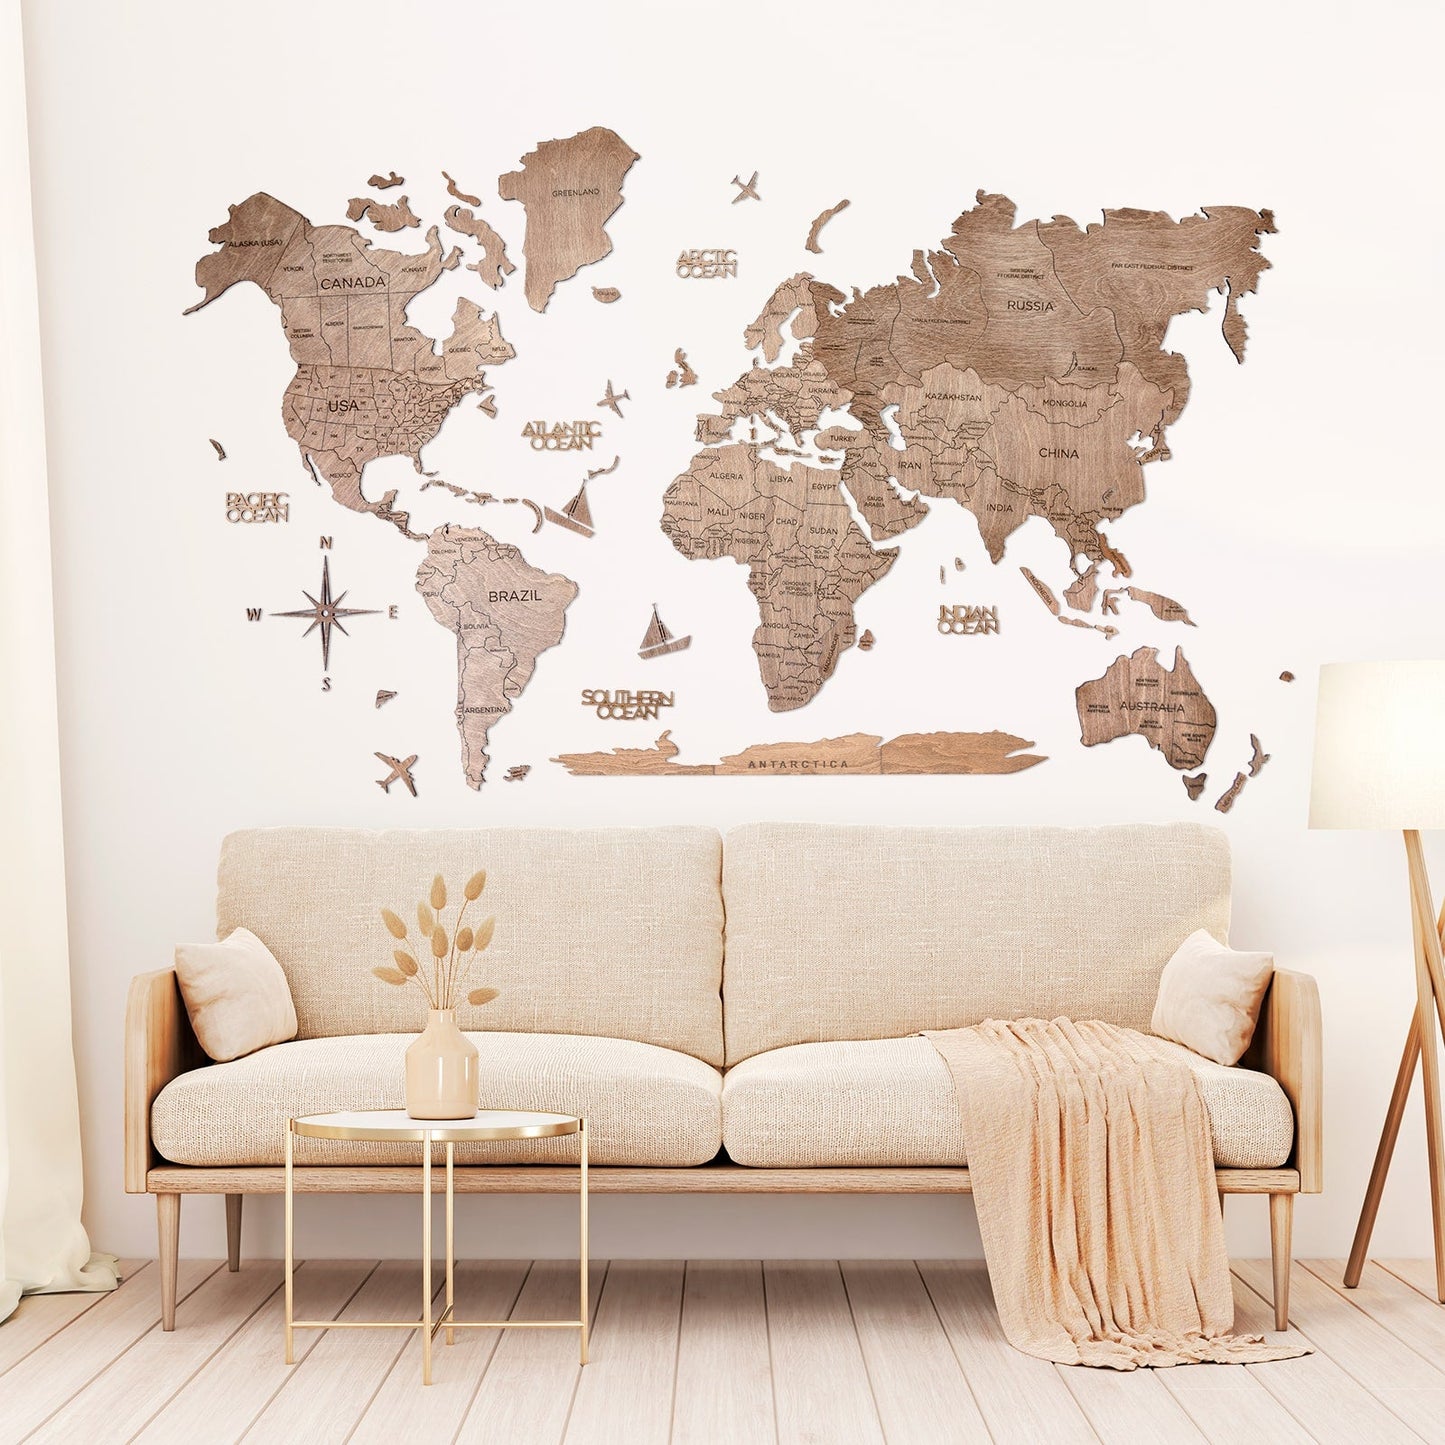 3D Wooden World Map Terra